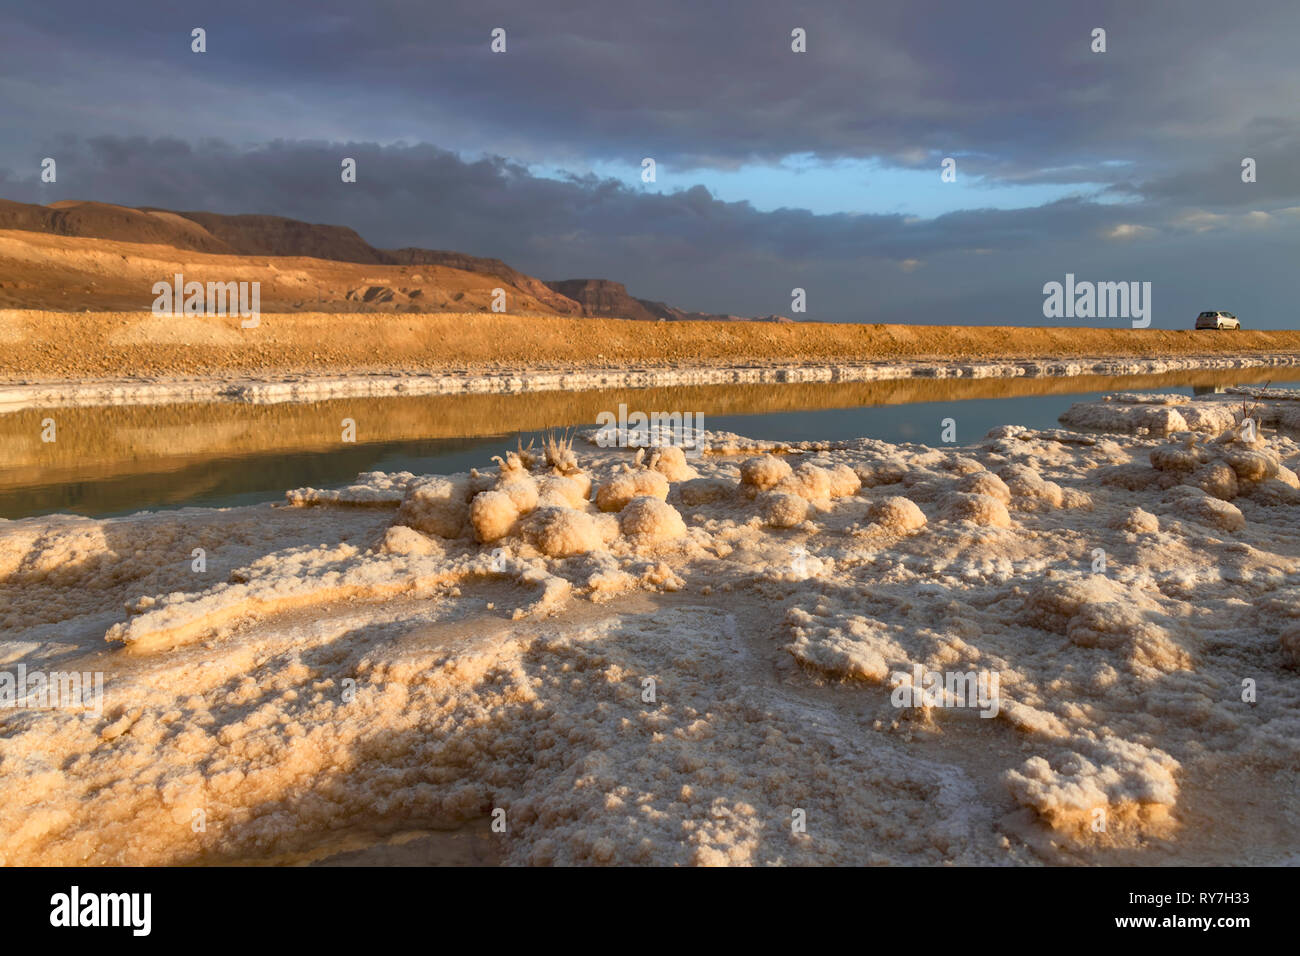 Formazioni di cristalli di sali minerali nelle acque del Mar Morto. Costa con monti all'orizzonte. Seascape Foto Stock